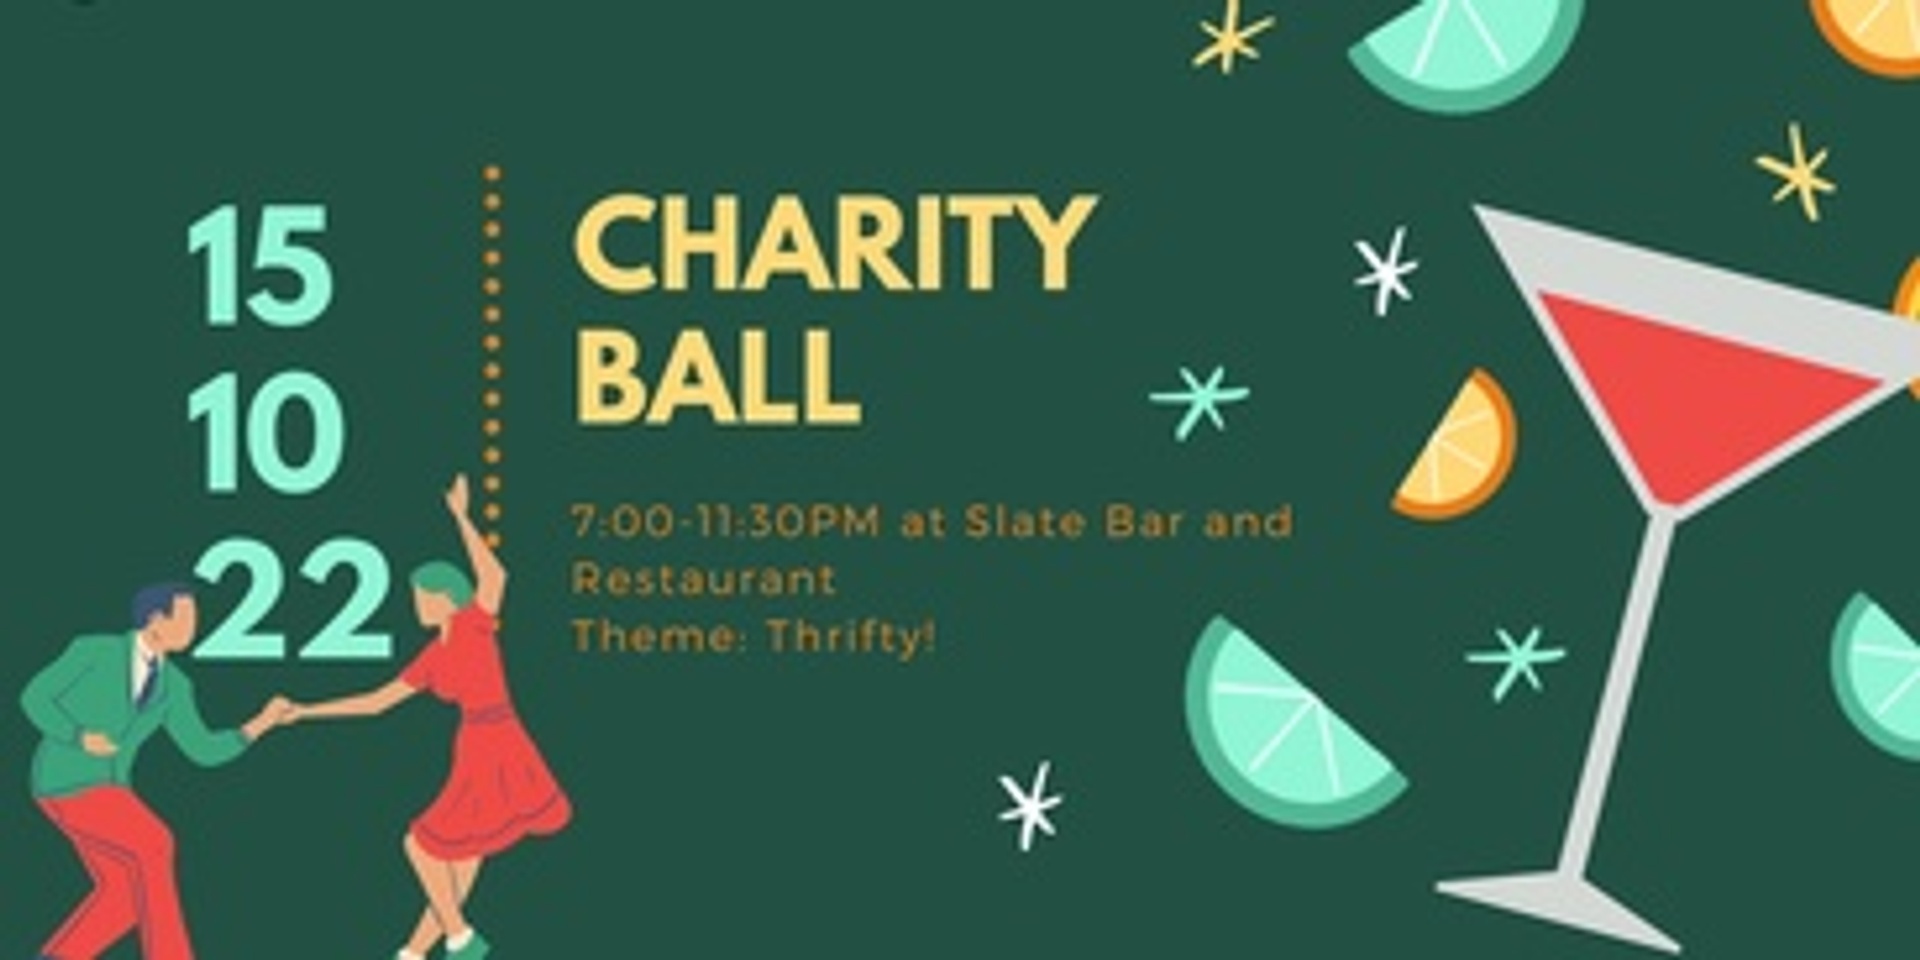 Charity Ball 2022!